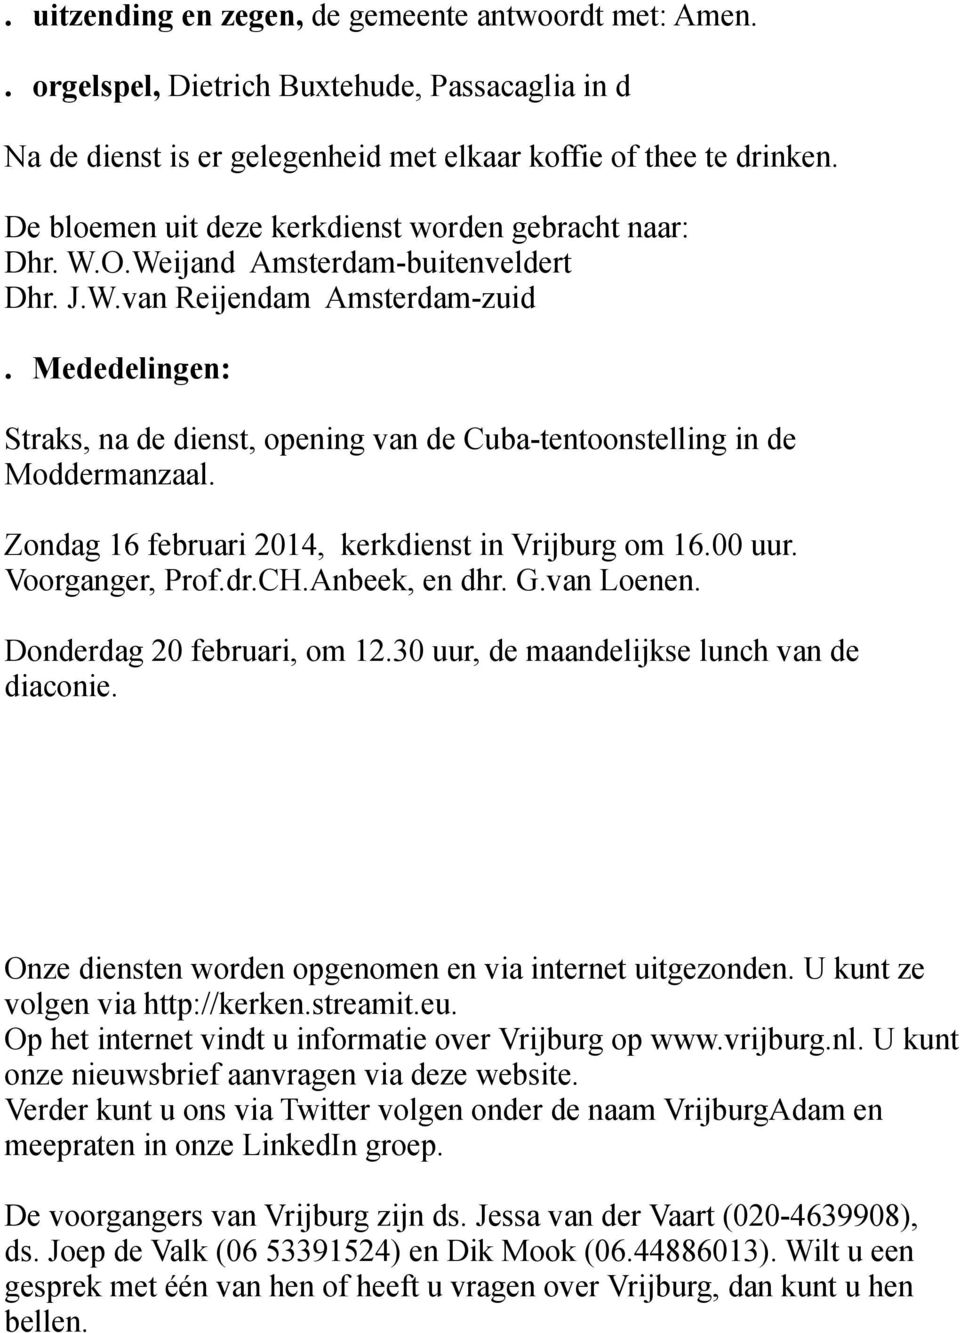 Mededelingen: Straks, na de dienst, opening van de Cuba-tentoonstelling in de Moddermanzaal. Zondag 16 februari 2014, kerkdienst in Vrijburg om 16.00 uur. Voorganger, Prof.dr.CH.Anbeek, en dhr. G.